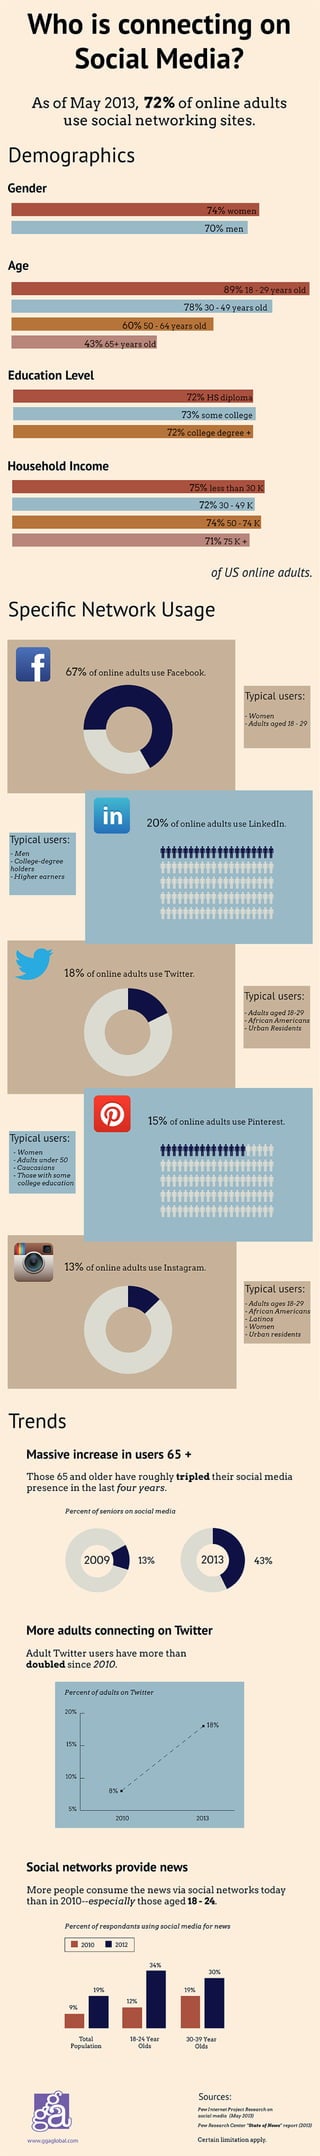 Social Media Demographics (2013)